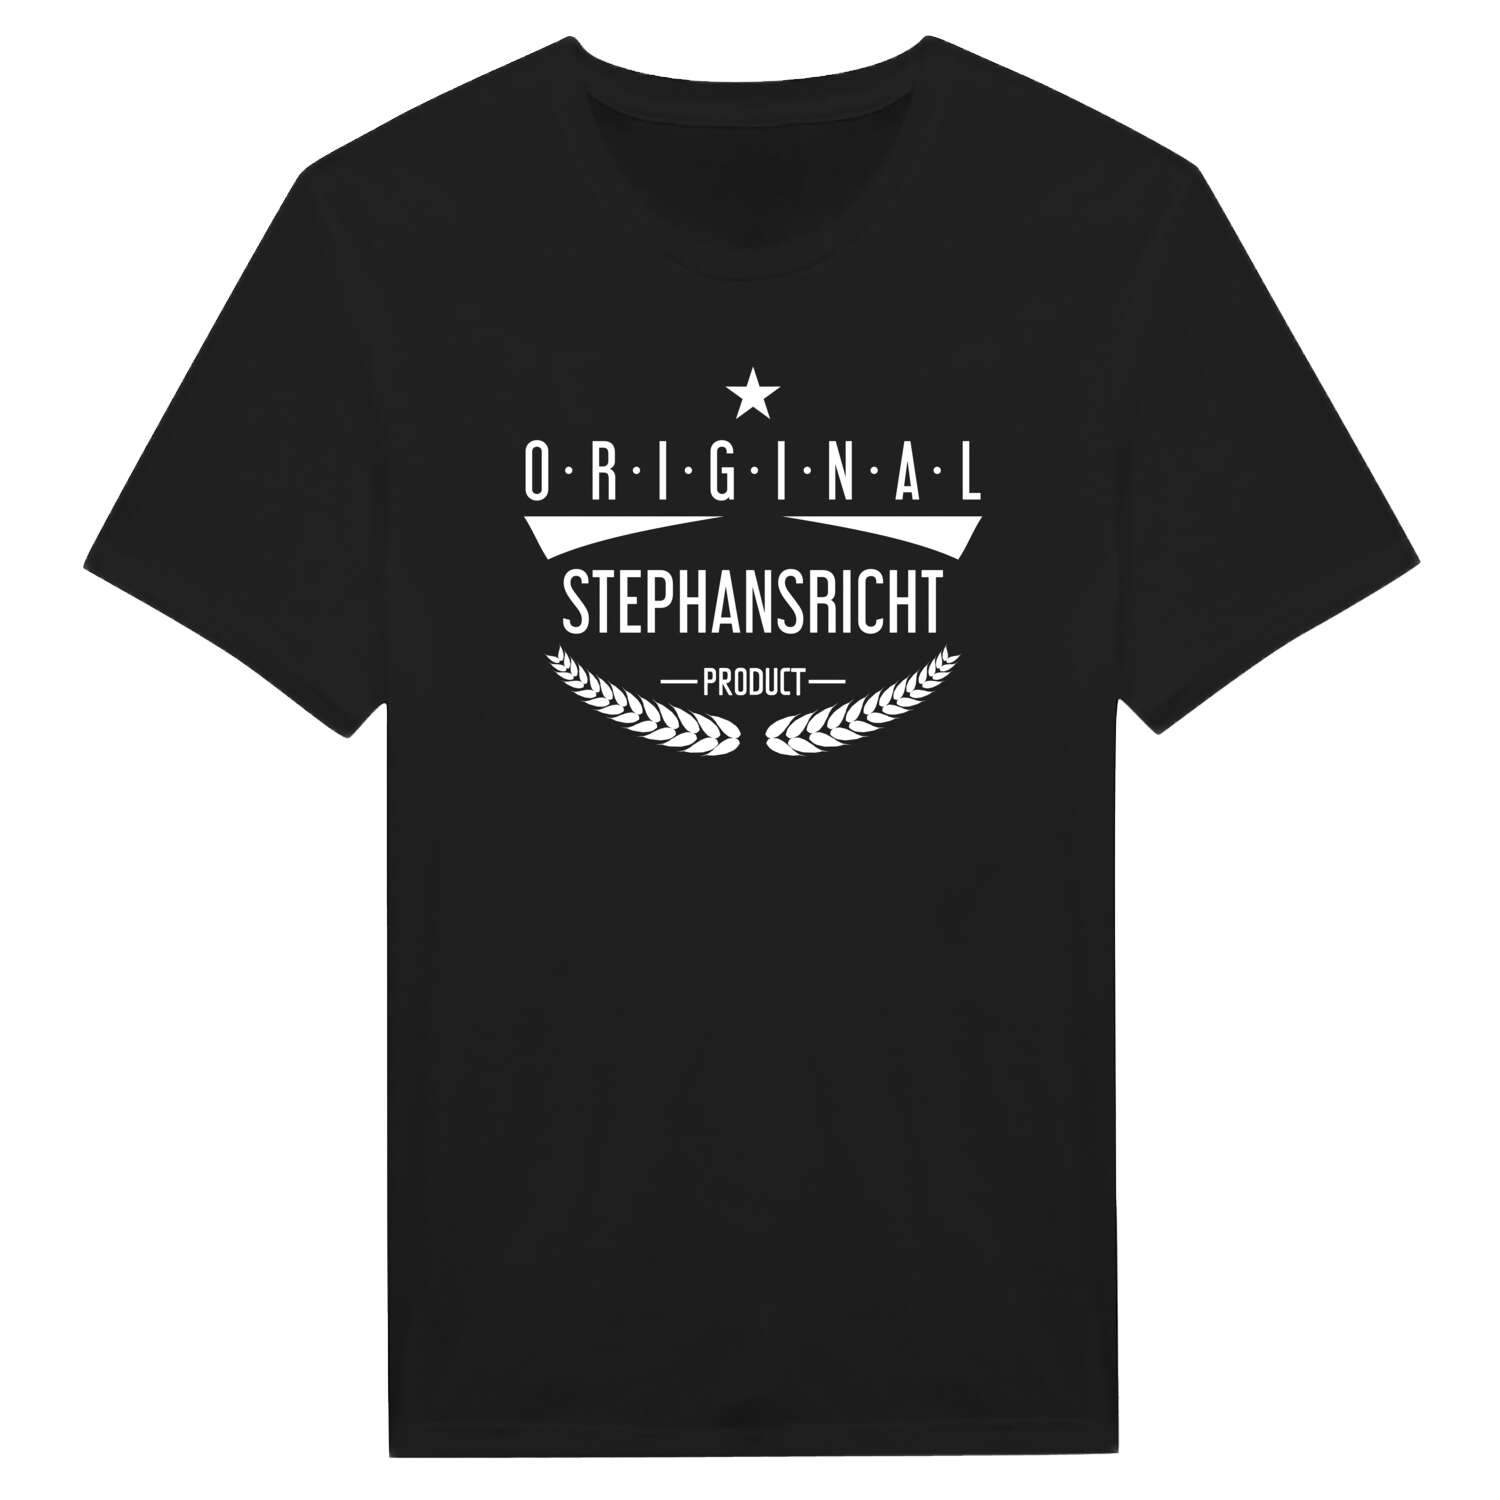 Stephansricht T-Shirt »Original Product«